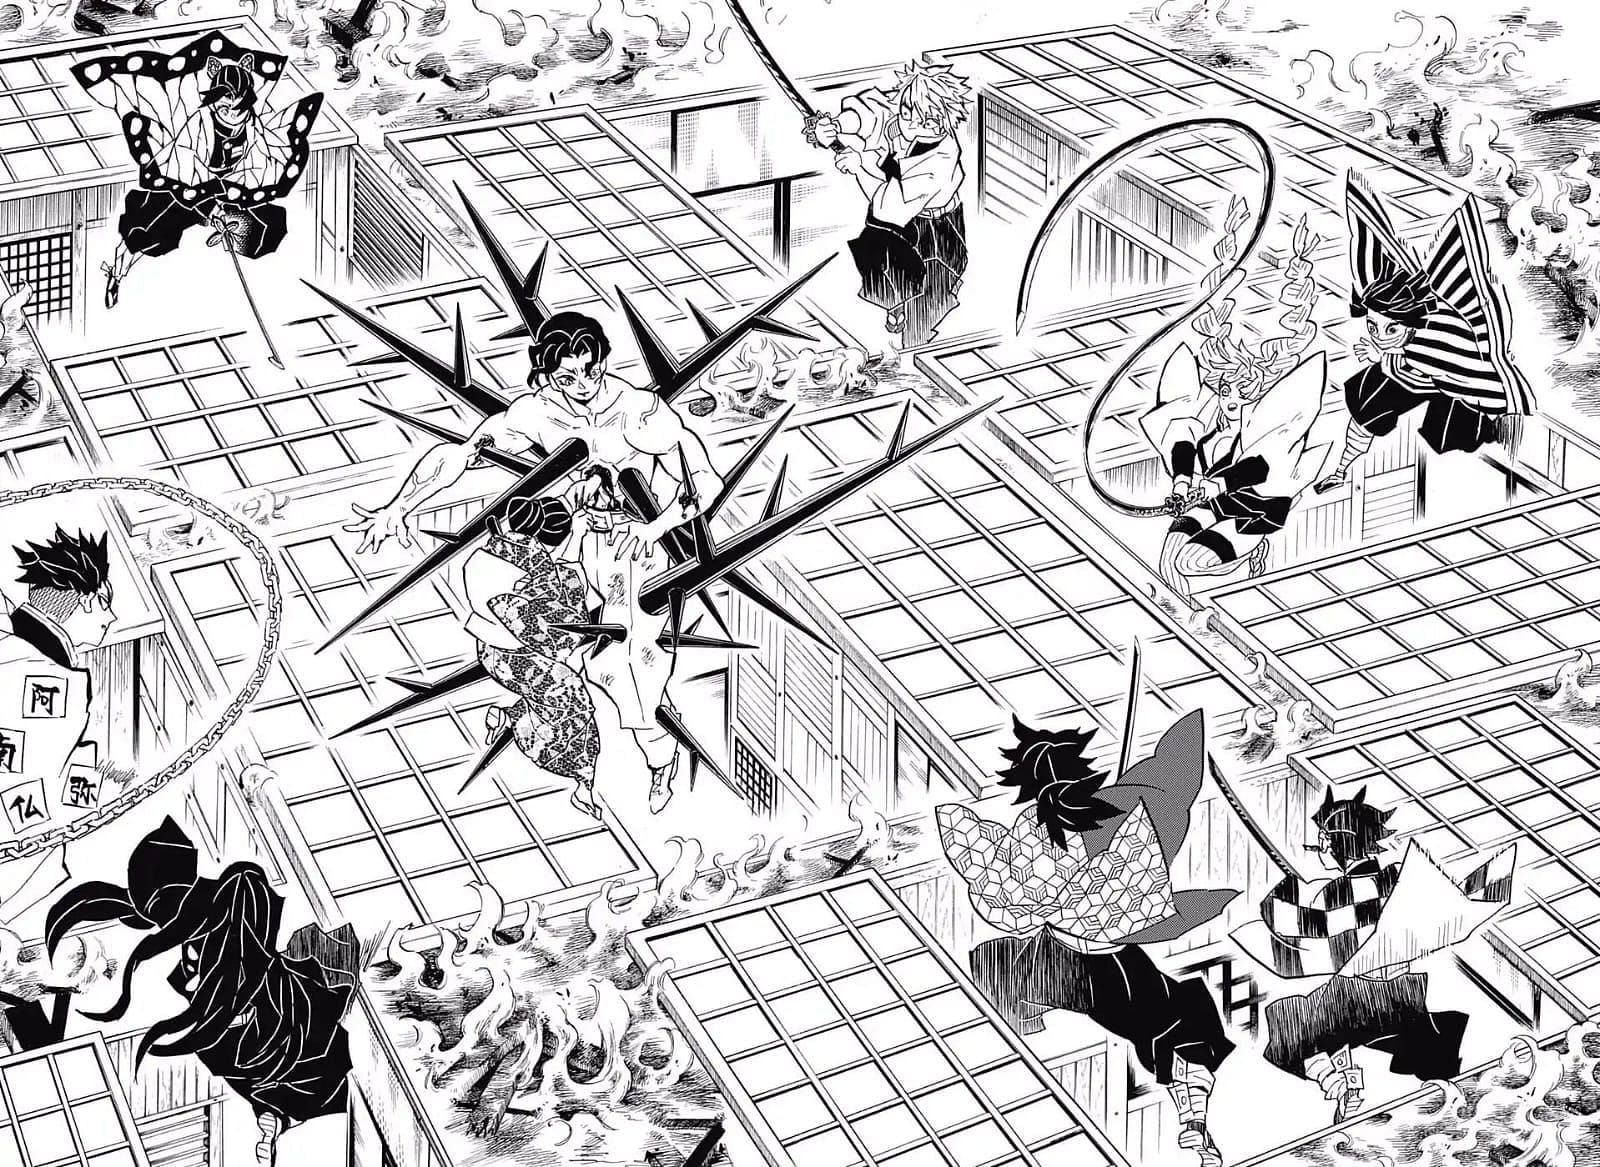 Muzan trapping the Hashiras in the Infinity Castle (Image via Koyoharu Gotouge/Shueisha)